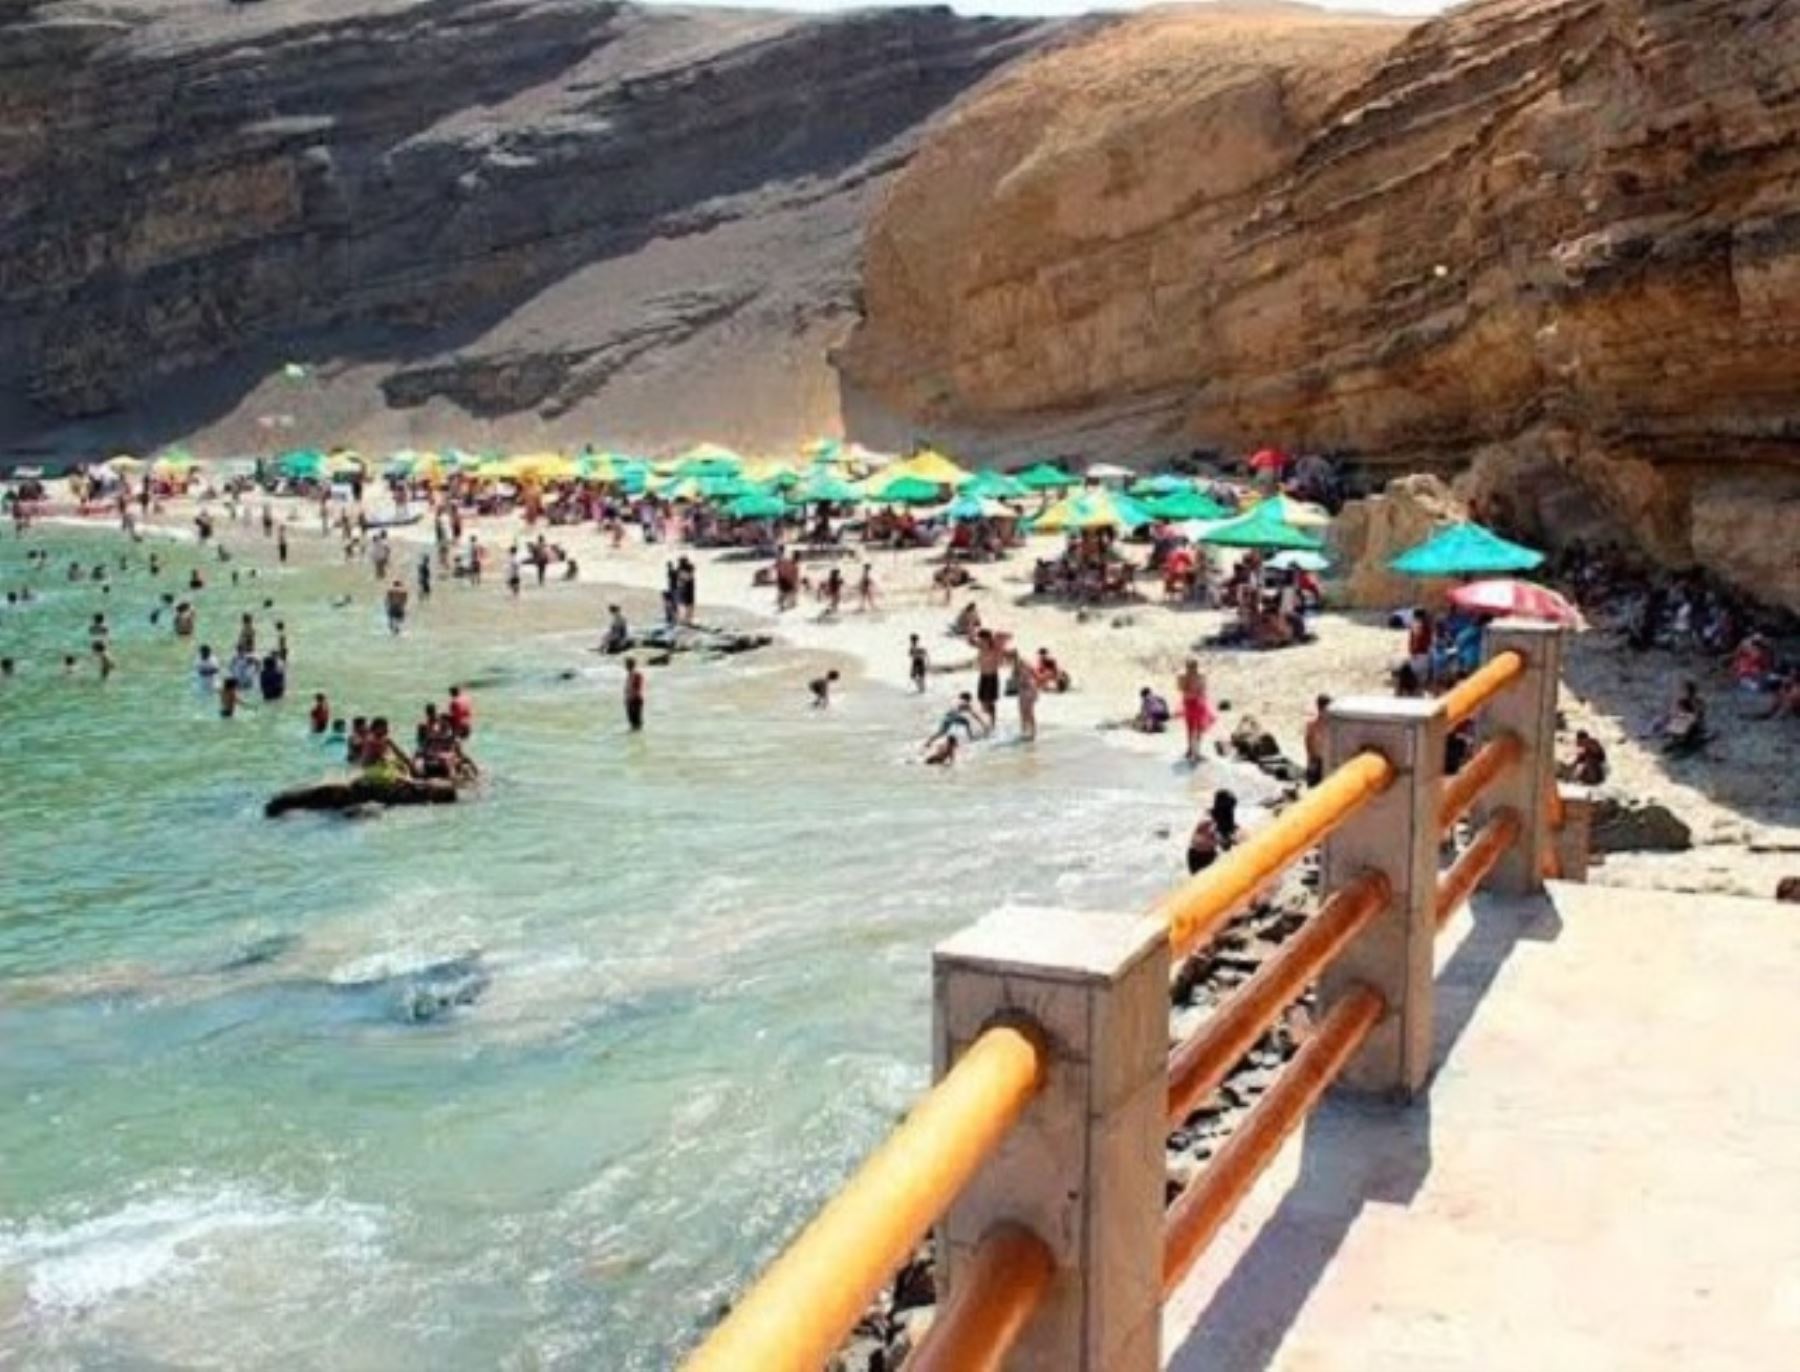 El balneario de Paracas, región Ica, espera recibir a más de 30,000 turistas durante el feriado largo por Semana Santa, la mayoría de viajeros procederán de Lima. ANDINA/Difusión